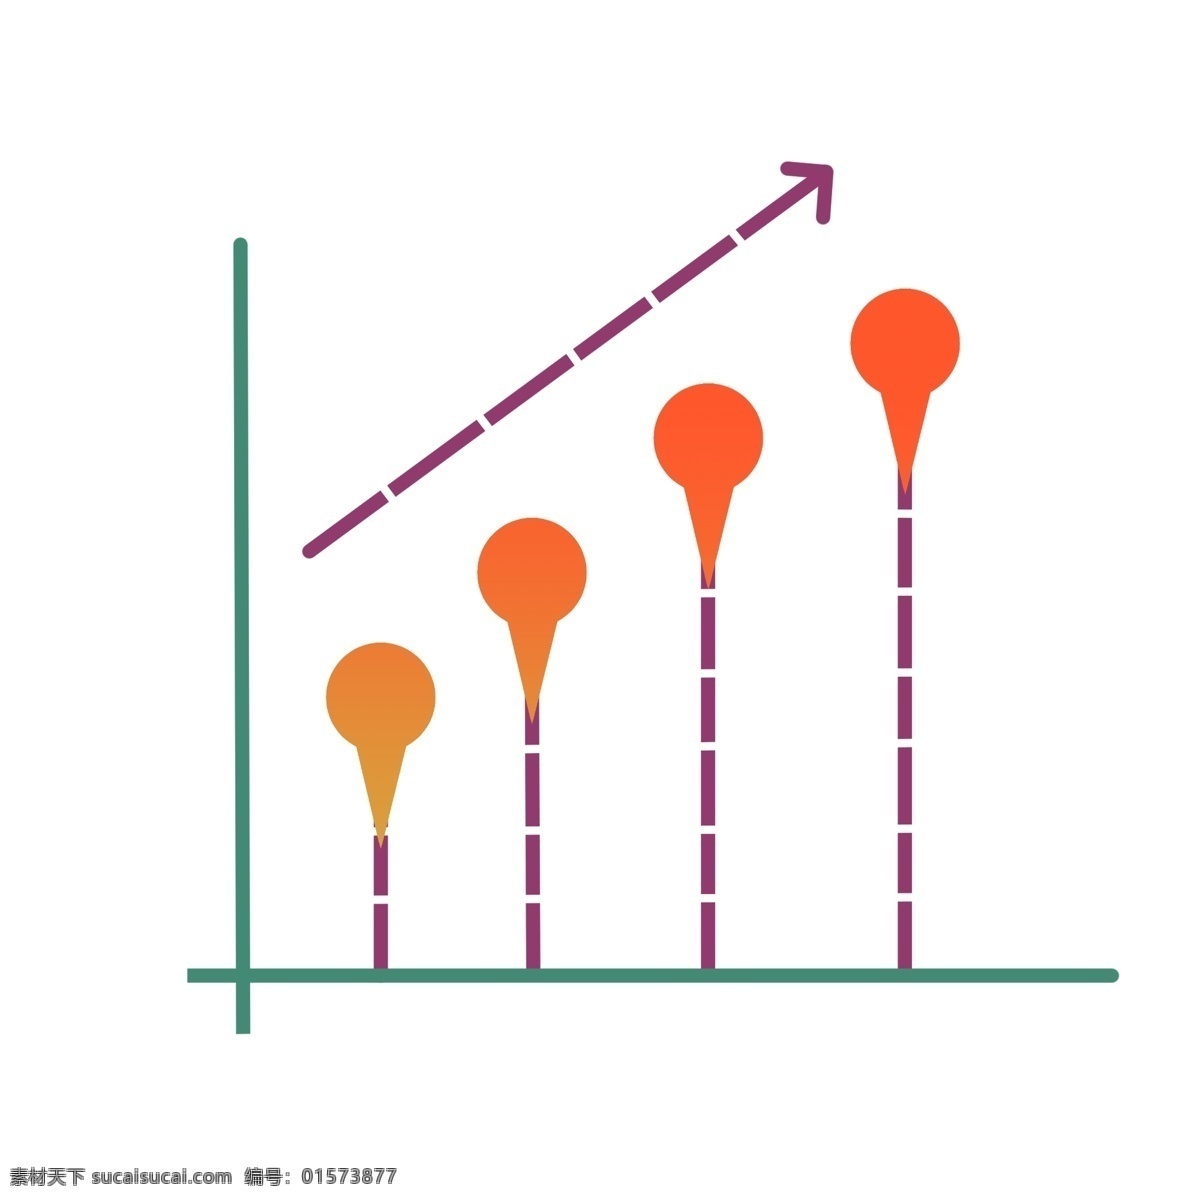 企业 优秀 团队 图标 数据分析上升 紫色箭头 顶级模式 最佳团队 荣誉团队 分析图表 企业优秀团队